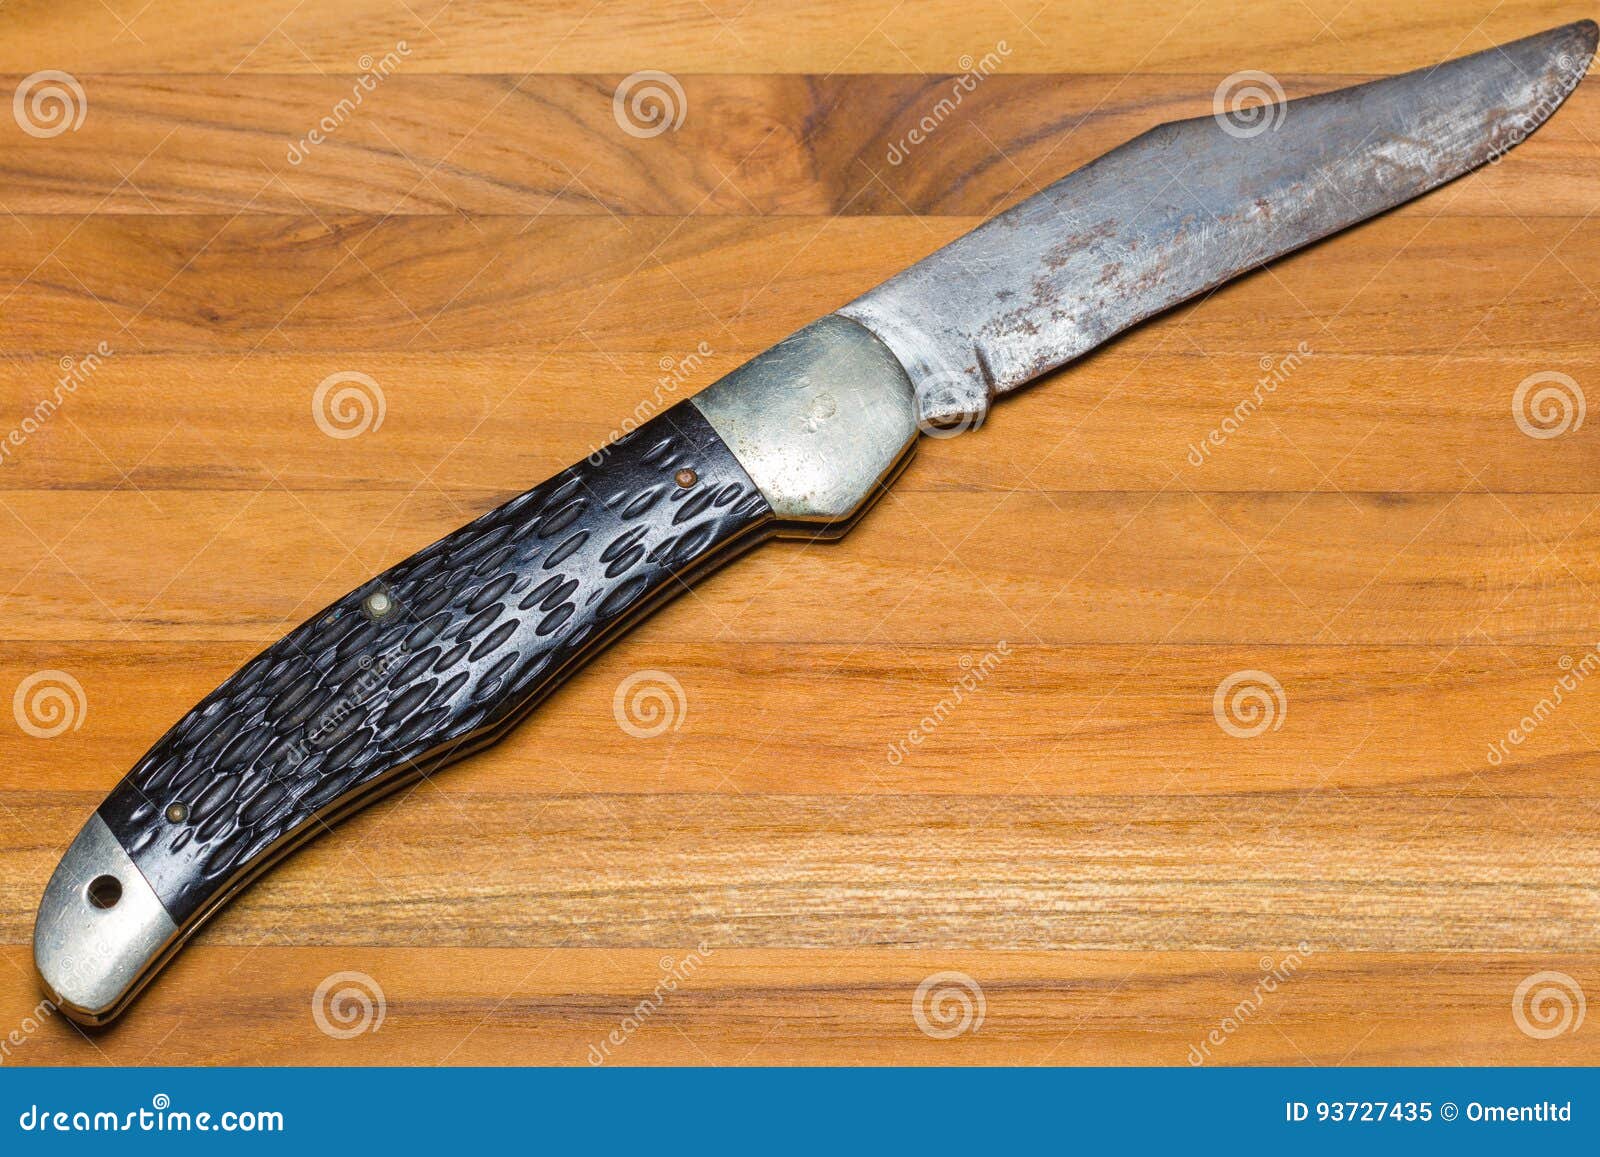 Old Jack Knife stock image. Image of utility, pocket - 93727435